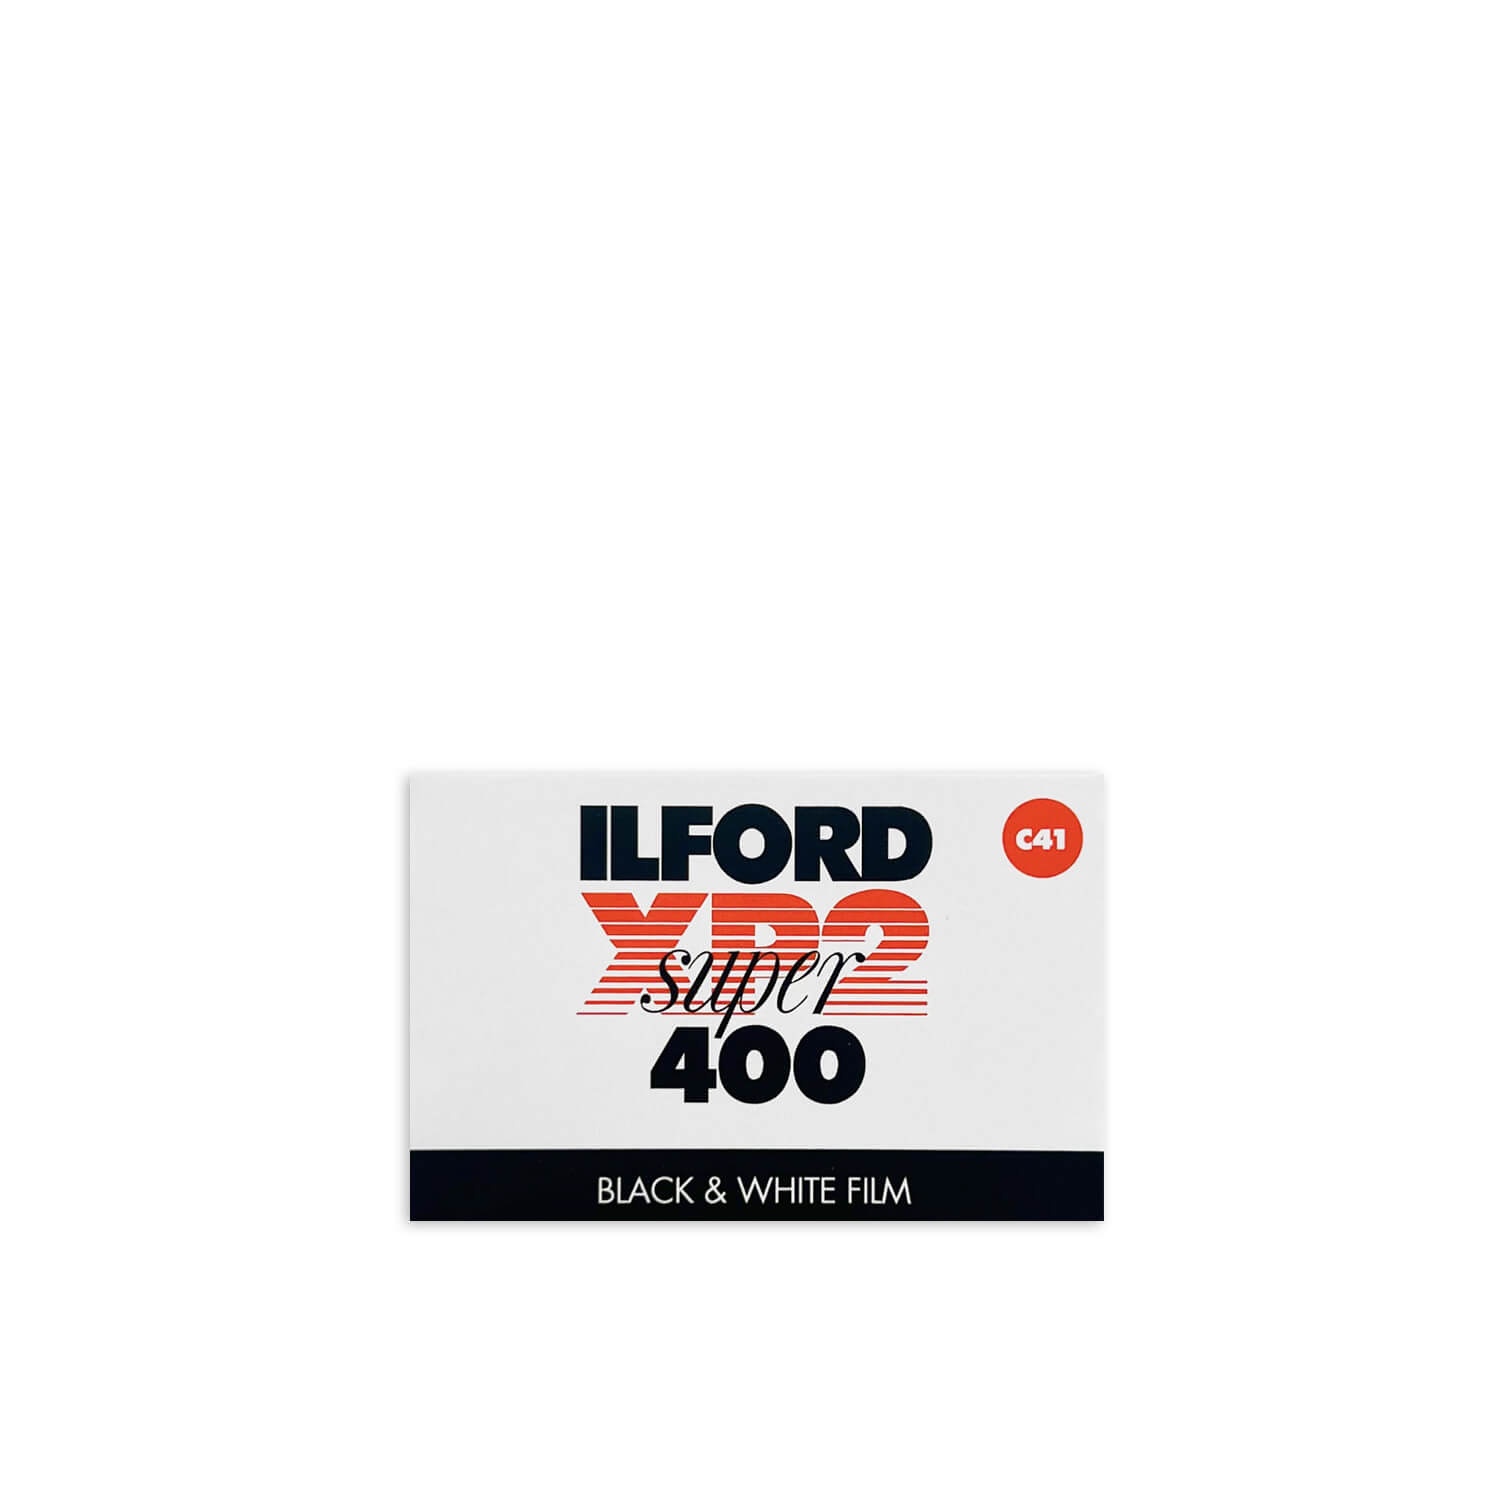 ILFORD_XP2_Super_400